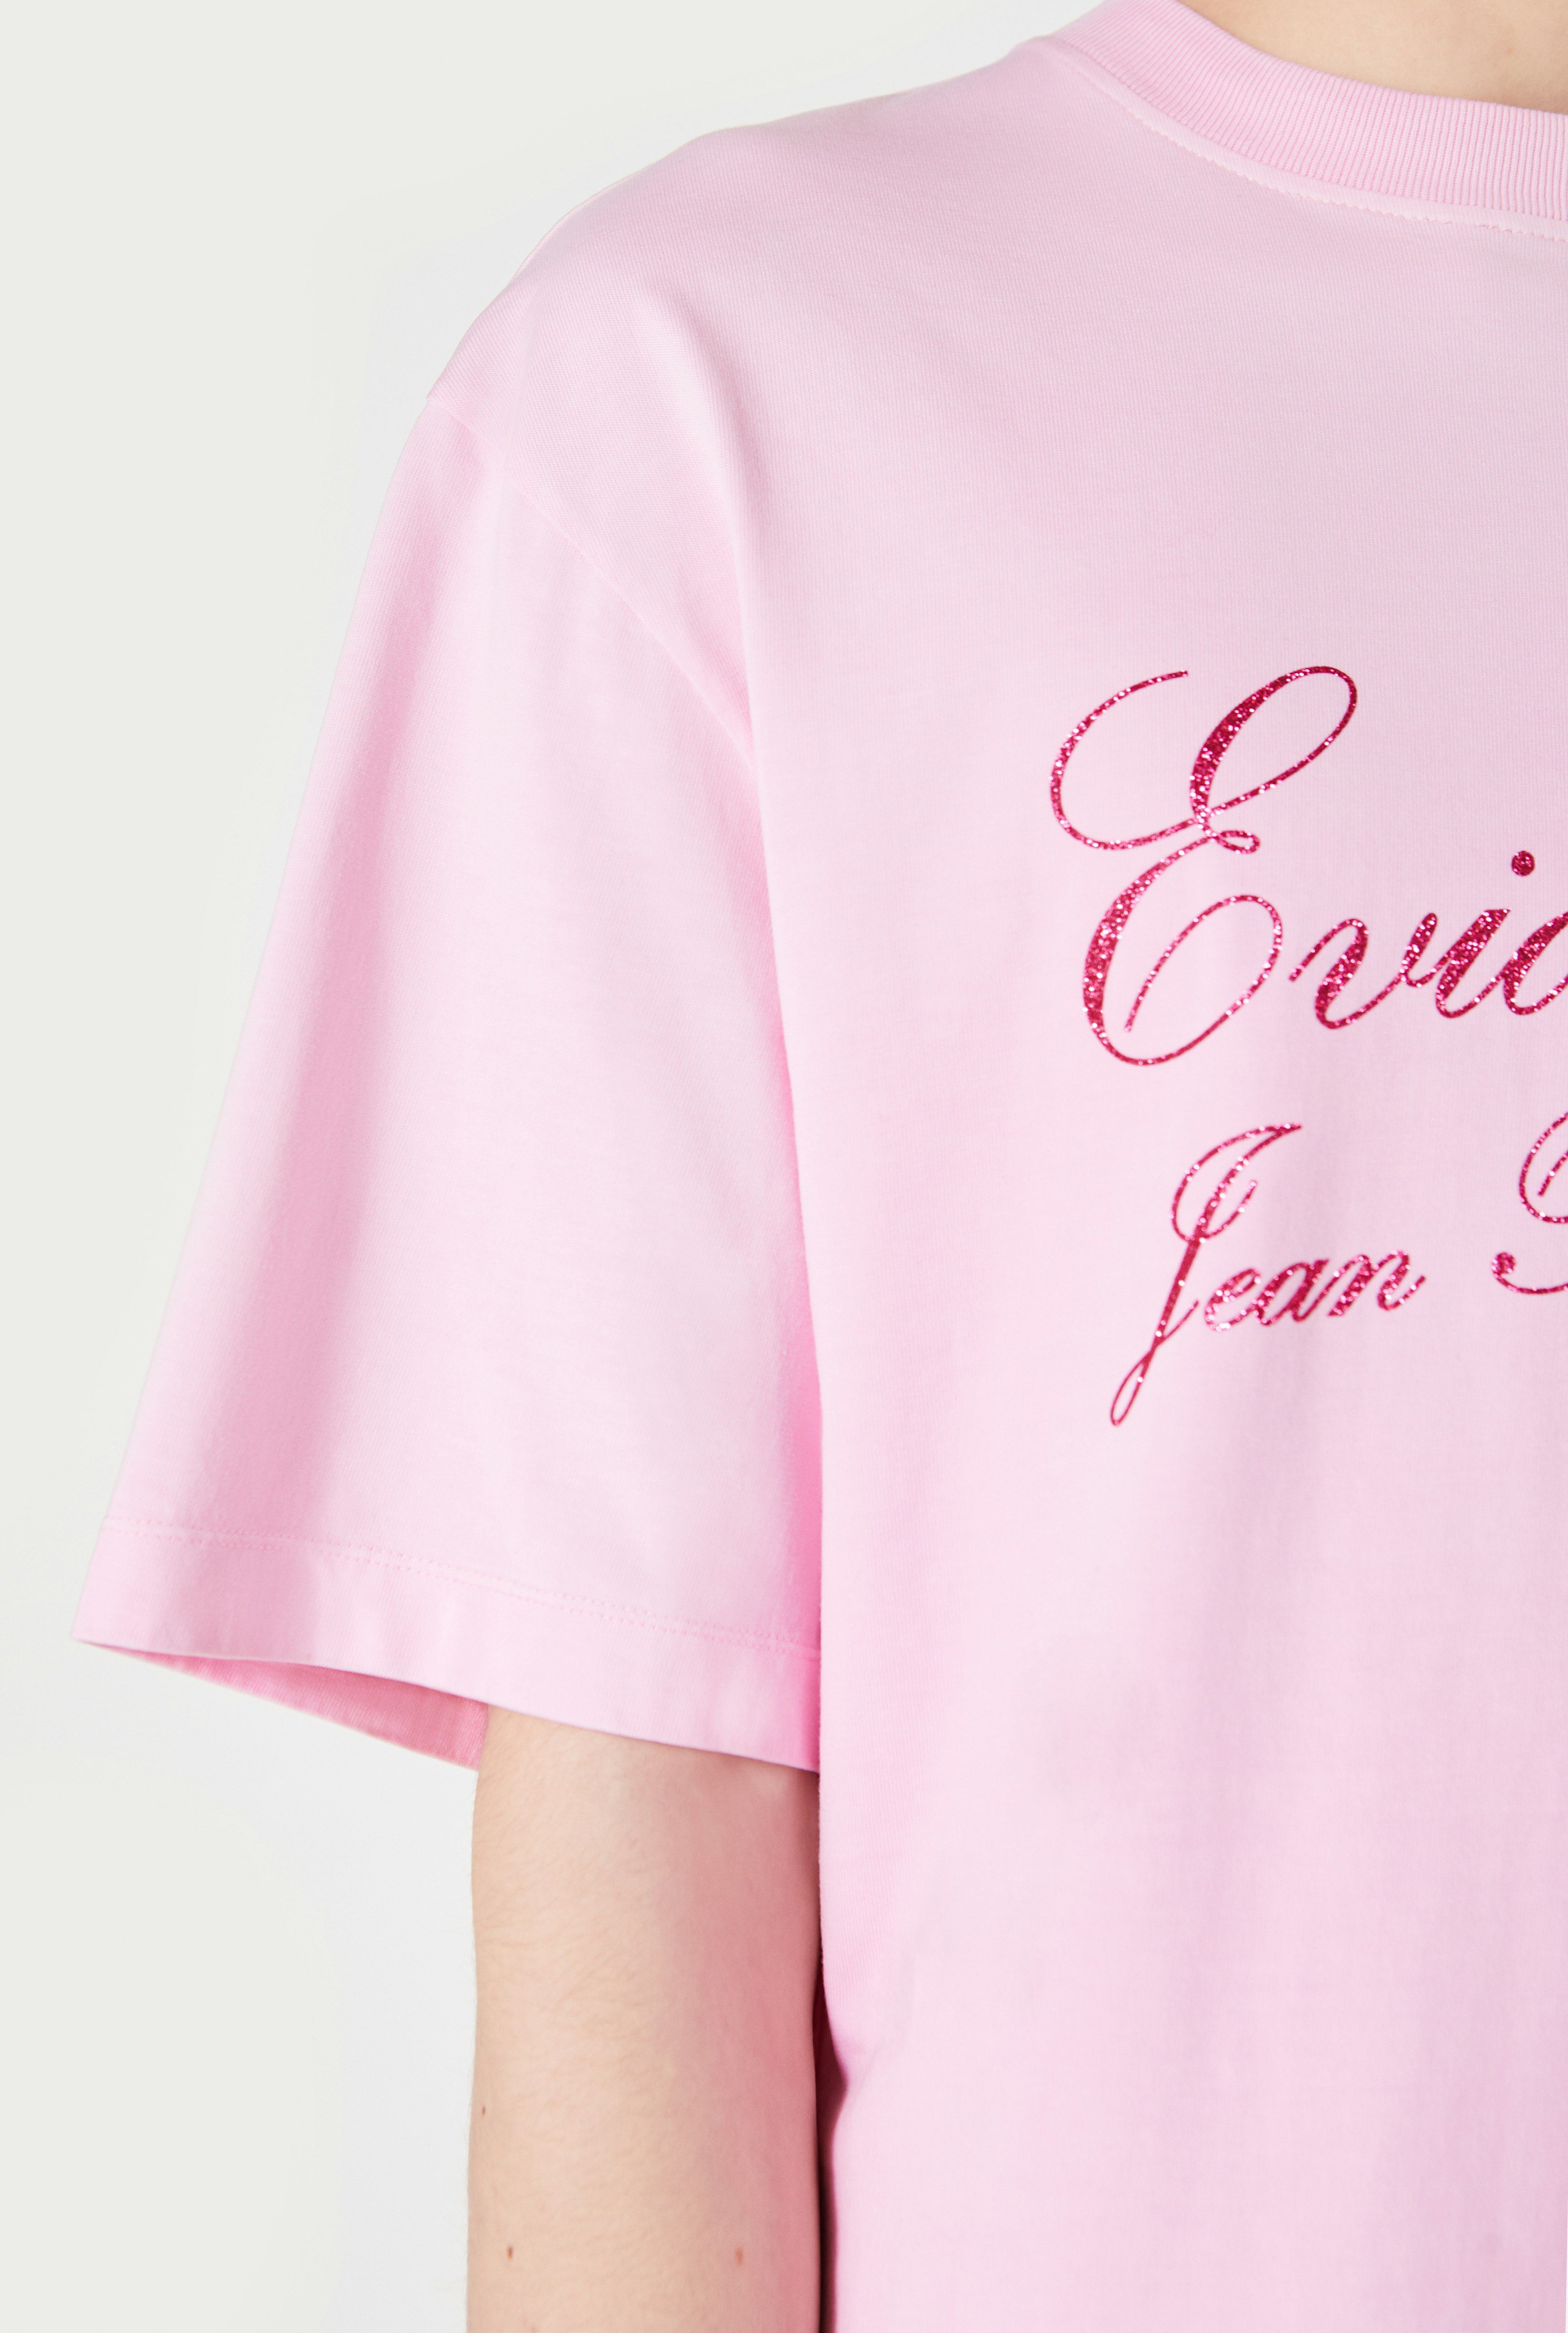 The Pink Évidemment T-Shirt Jean Paul Gaultier